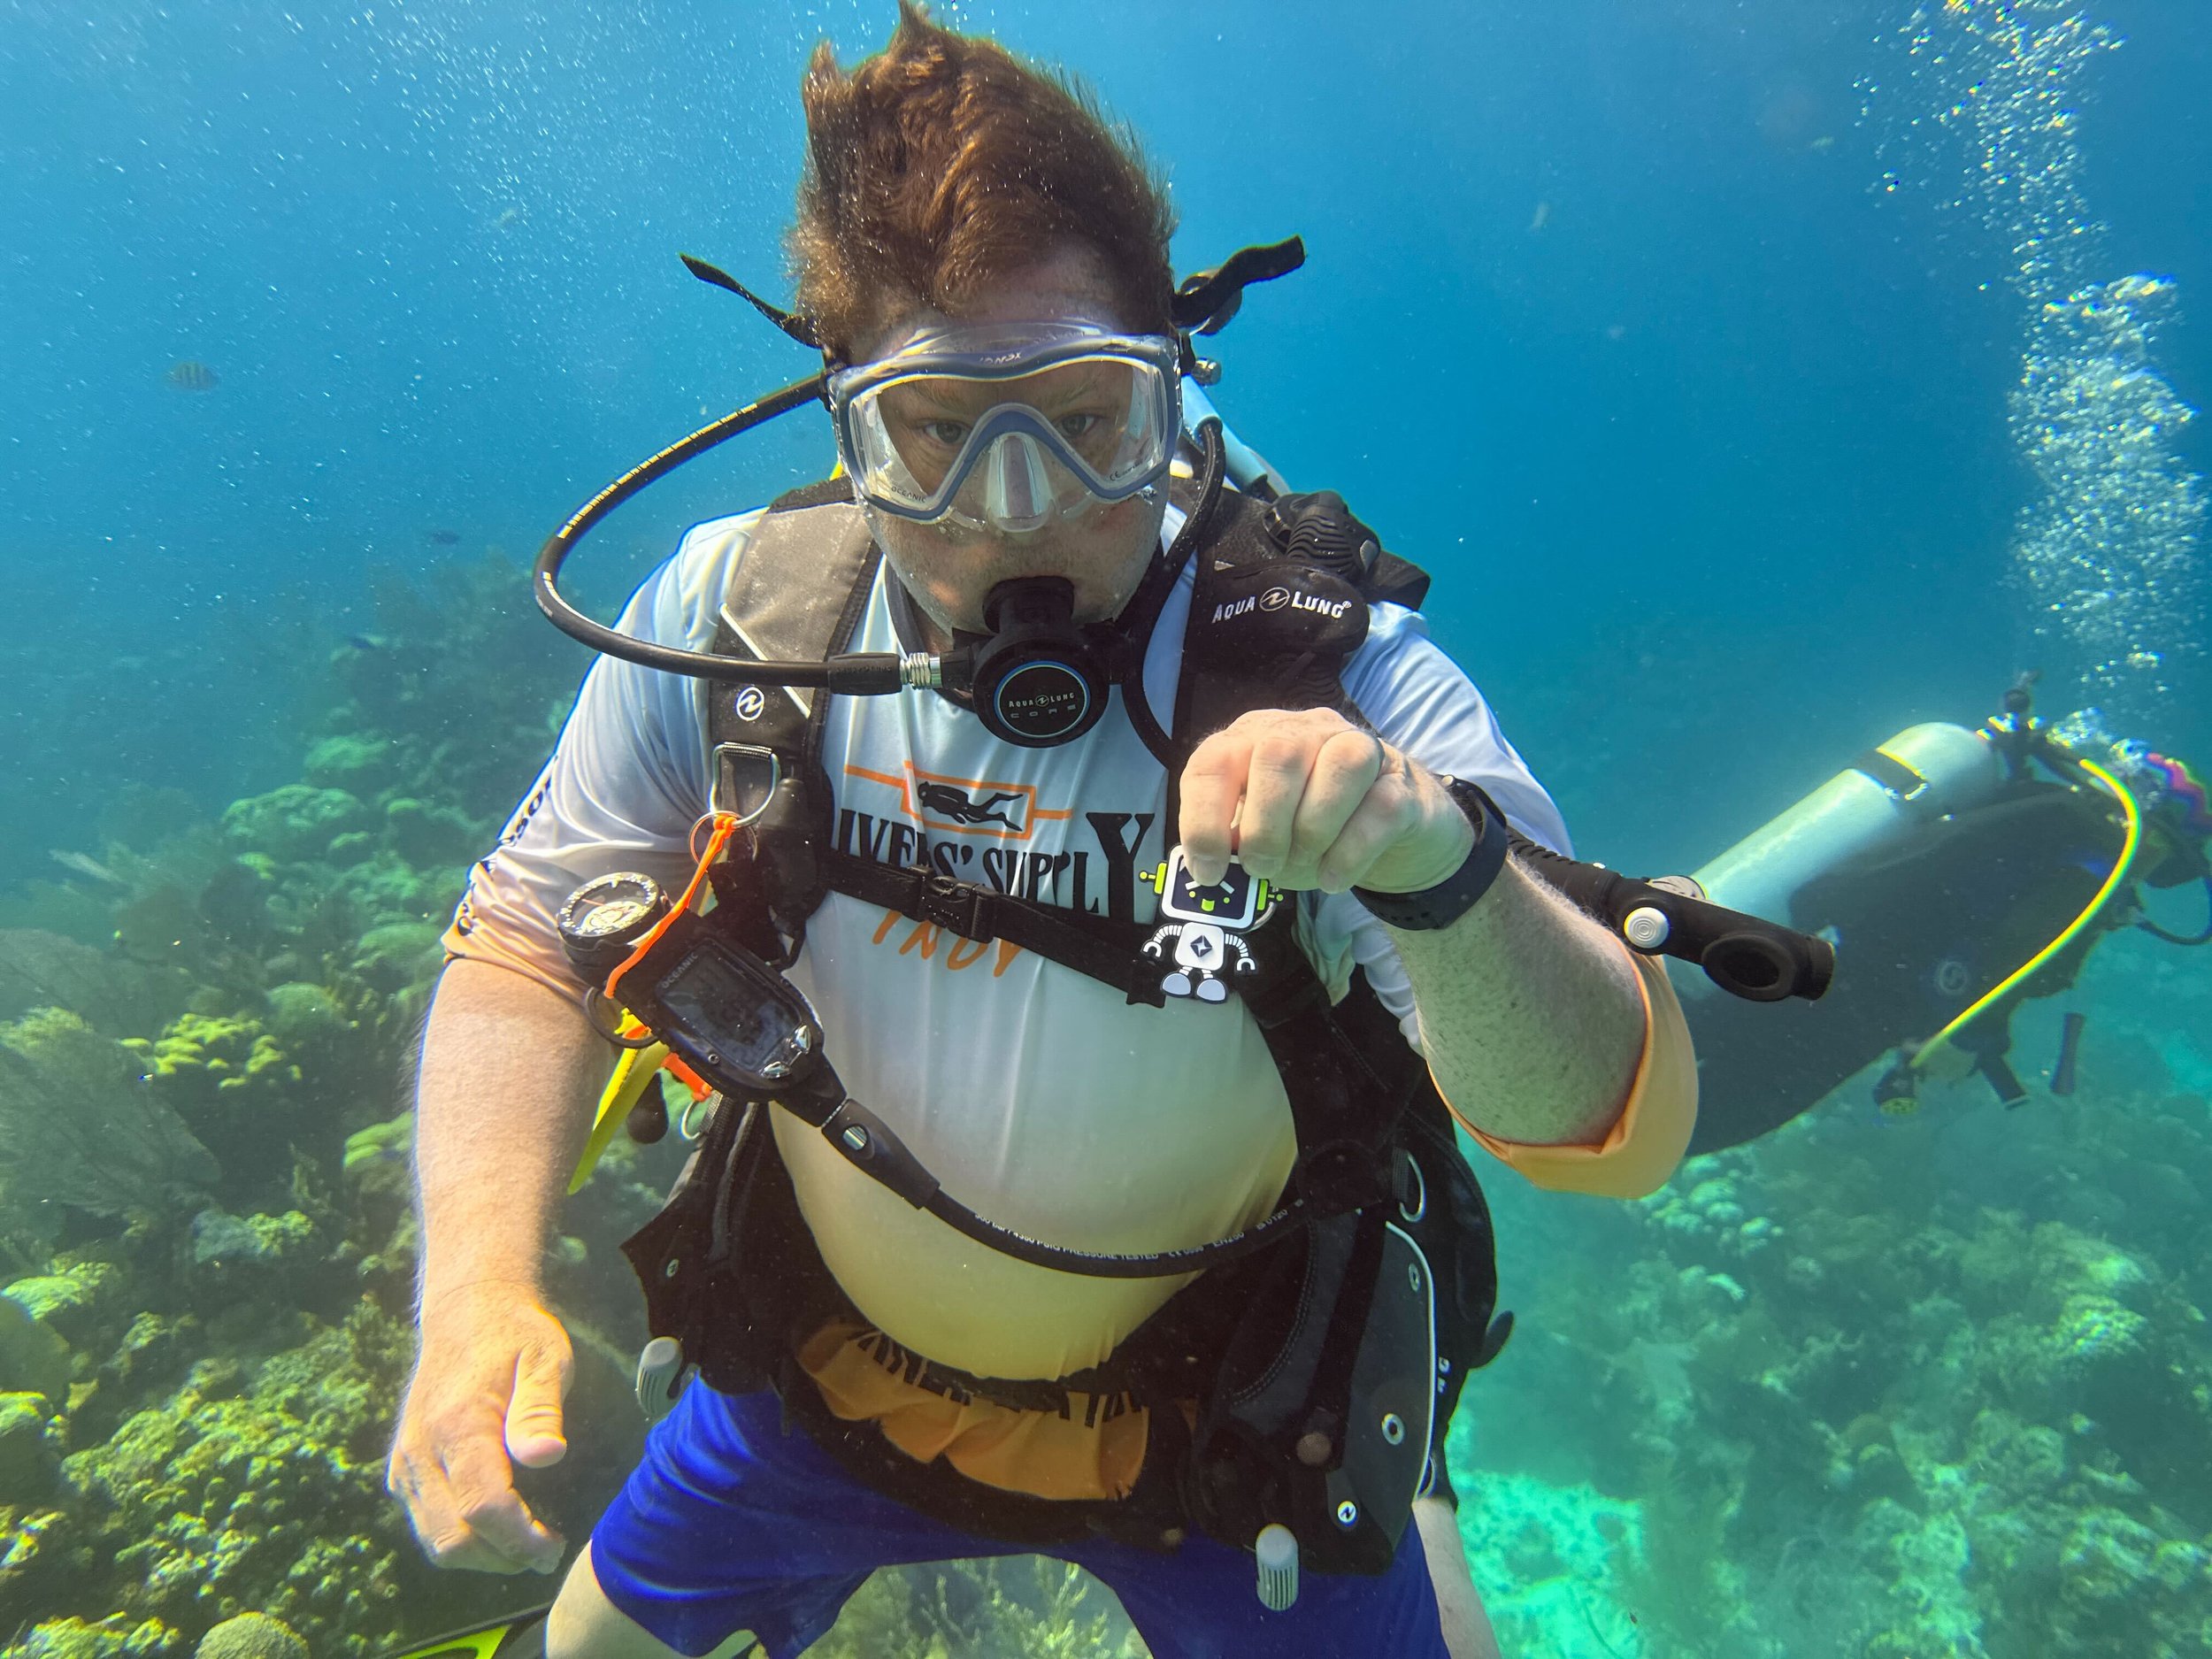 Robert Scuba Diving in Belize